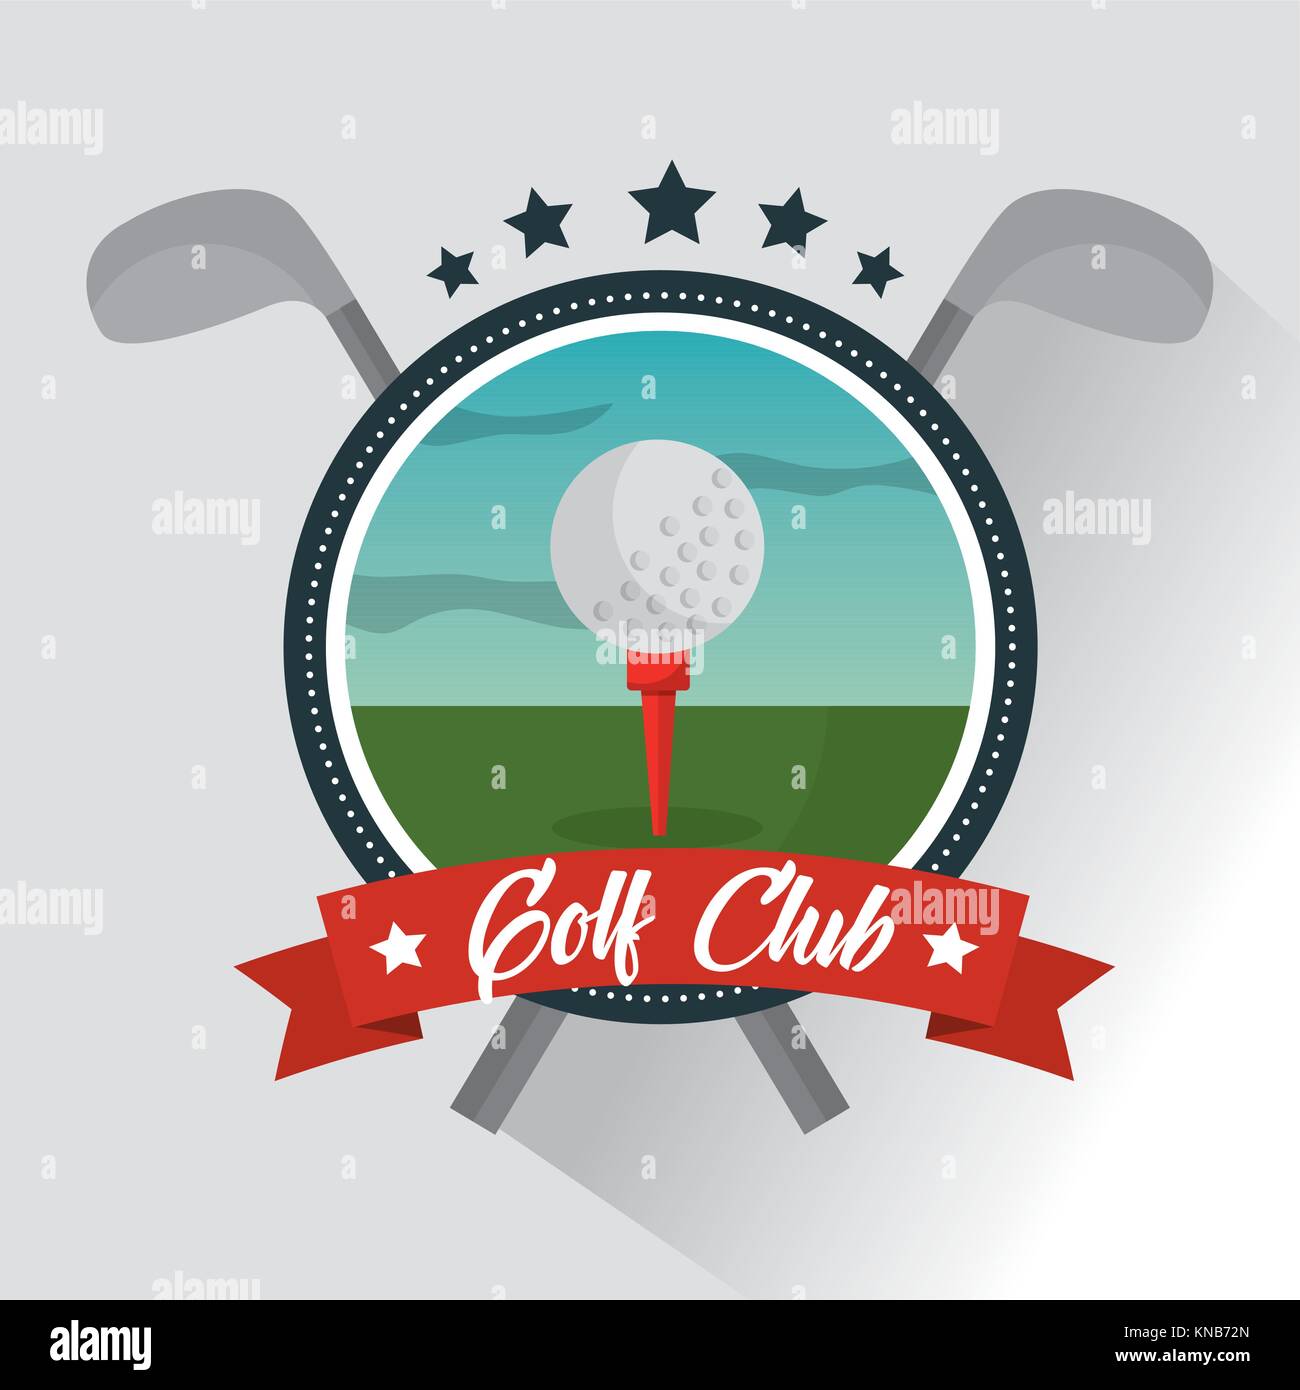 golf club ball banner star emblem Stock Vector